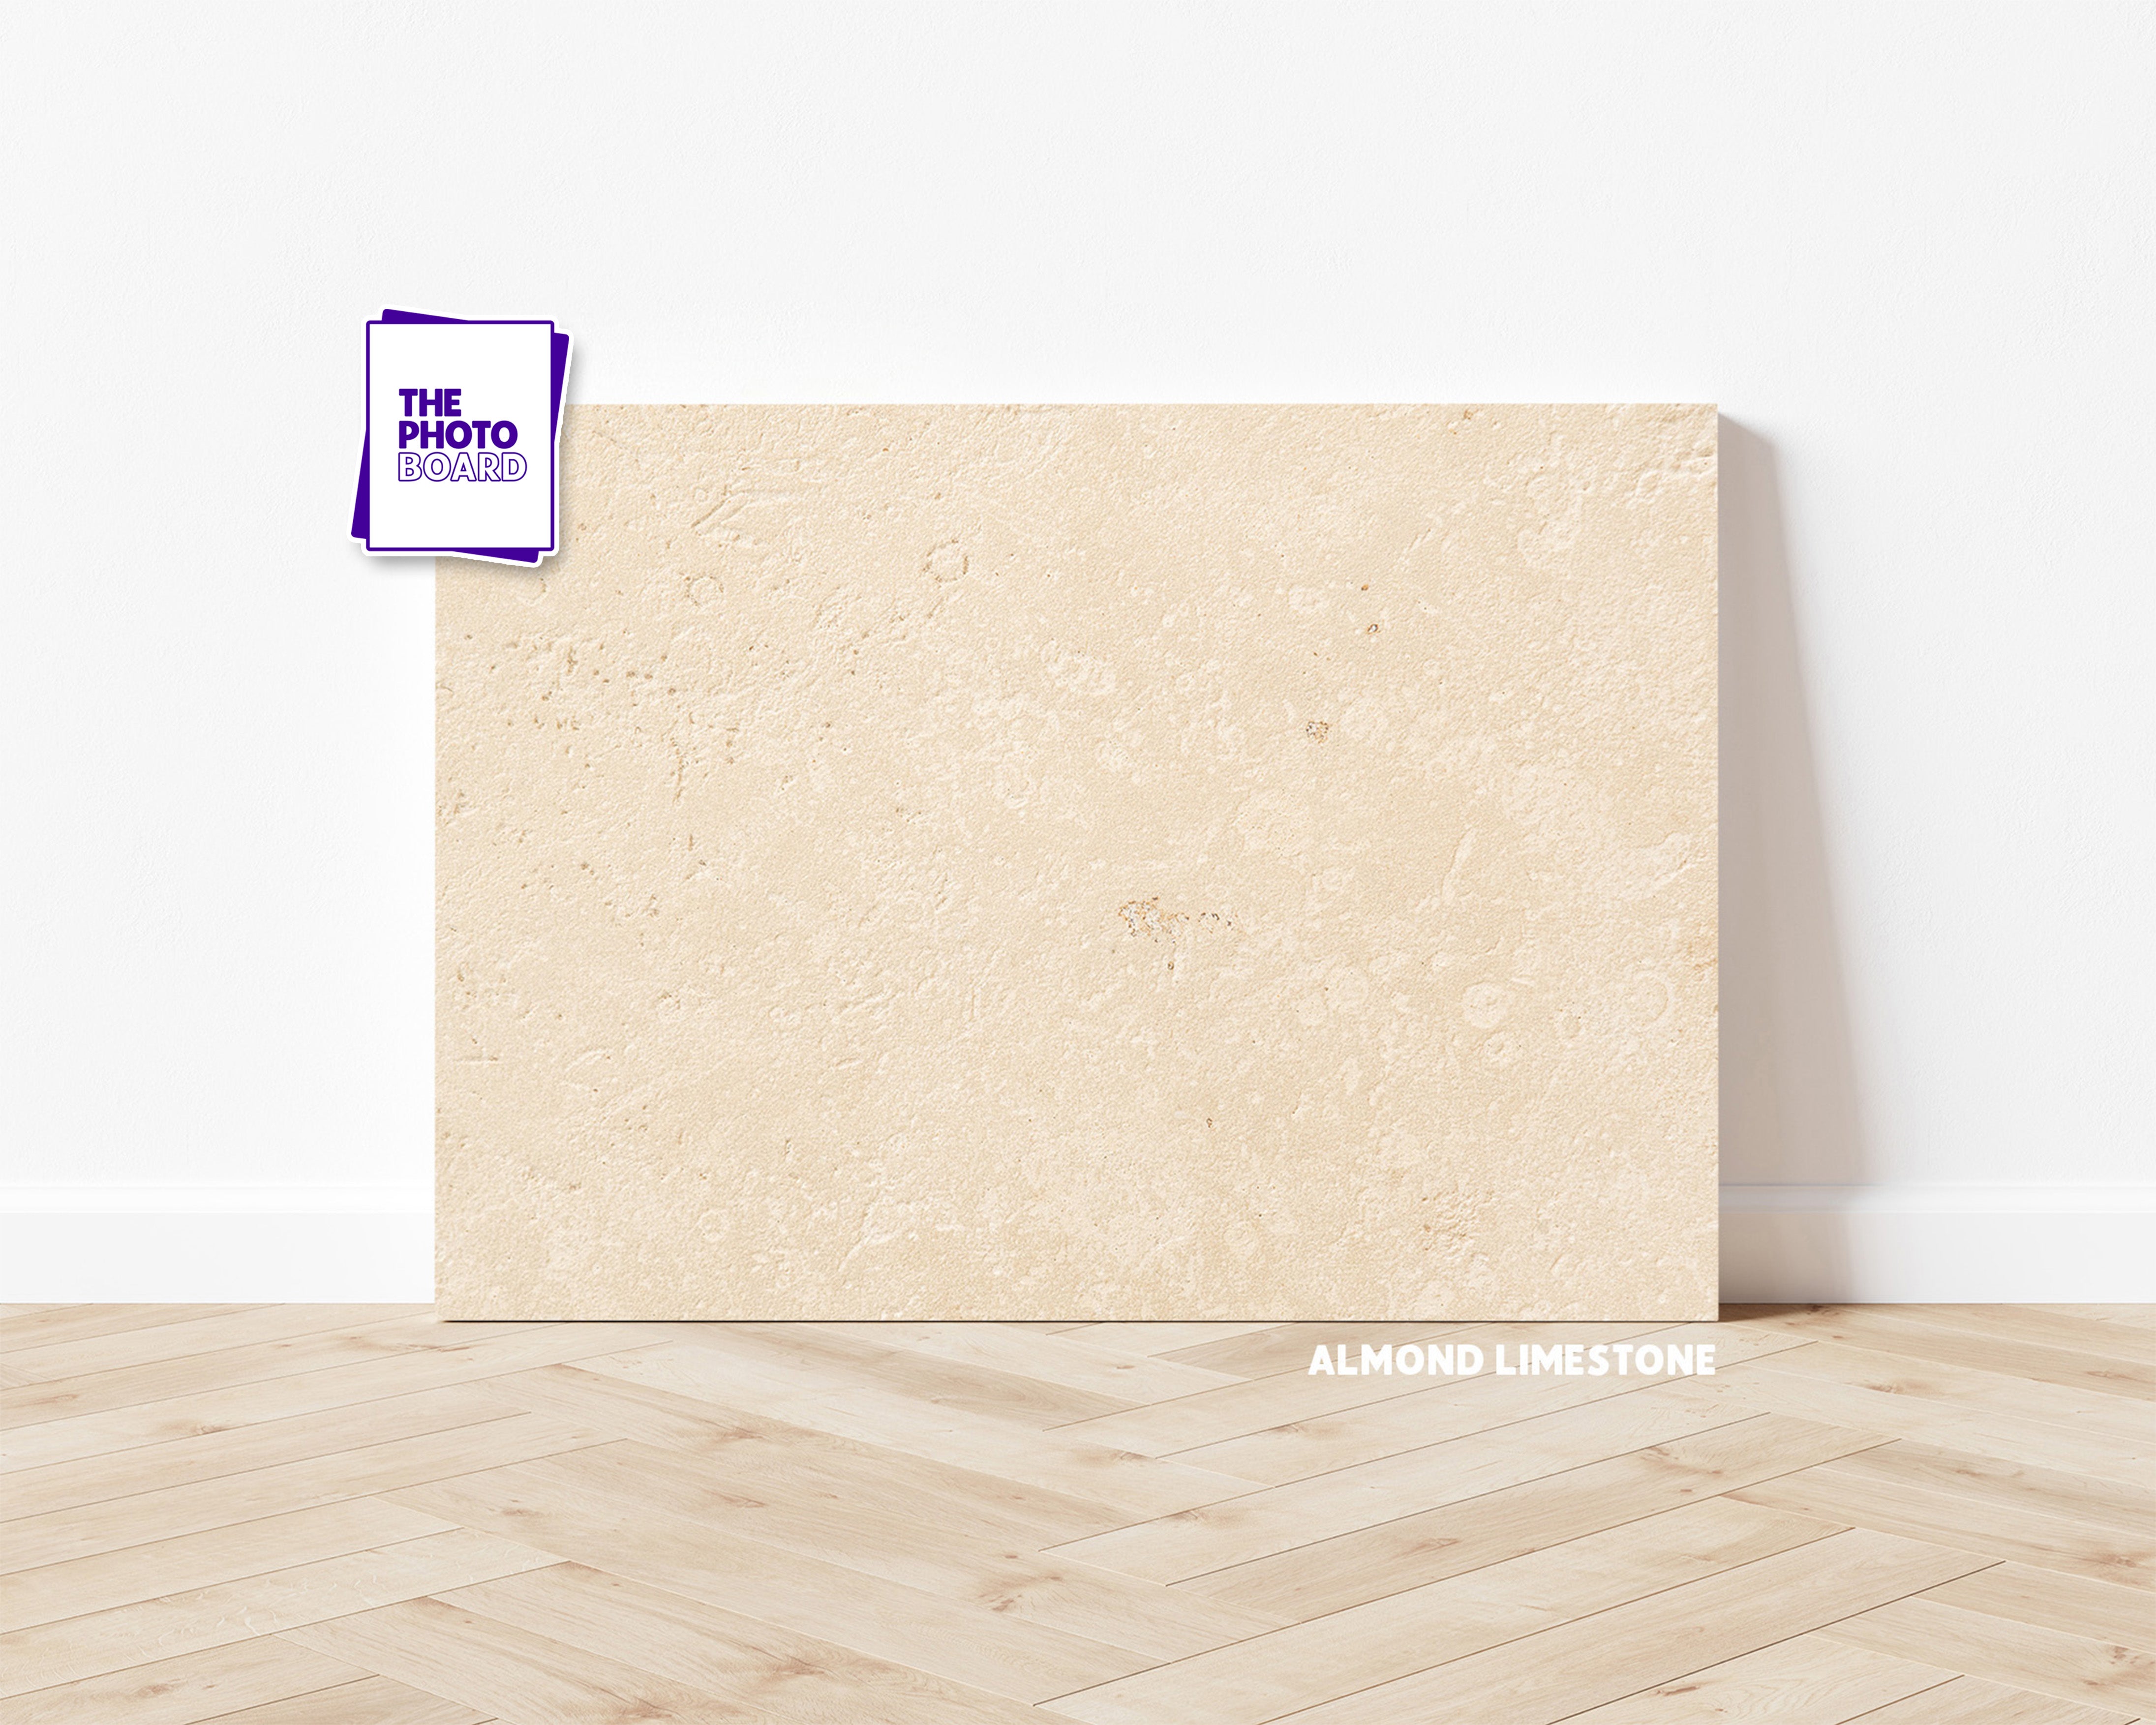 Almond Limestone | The Photo Board